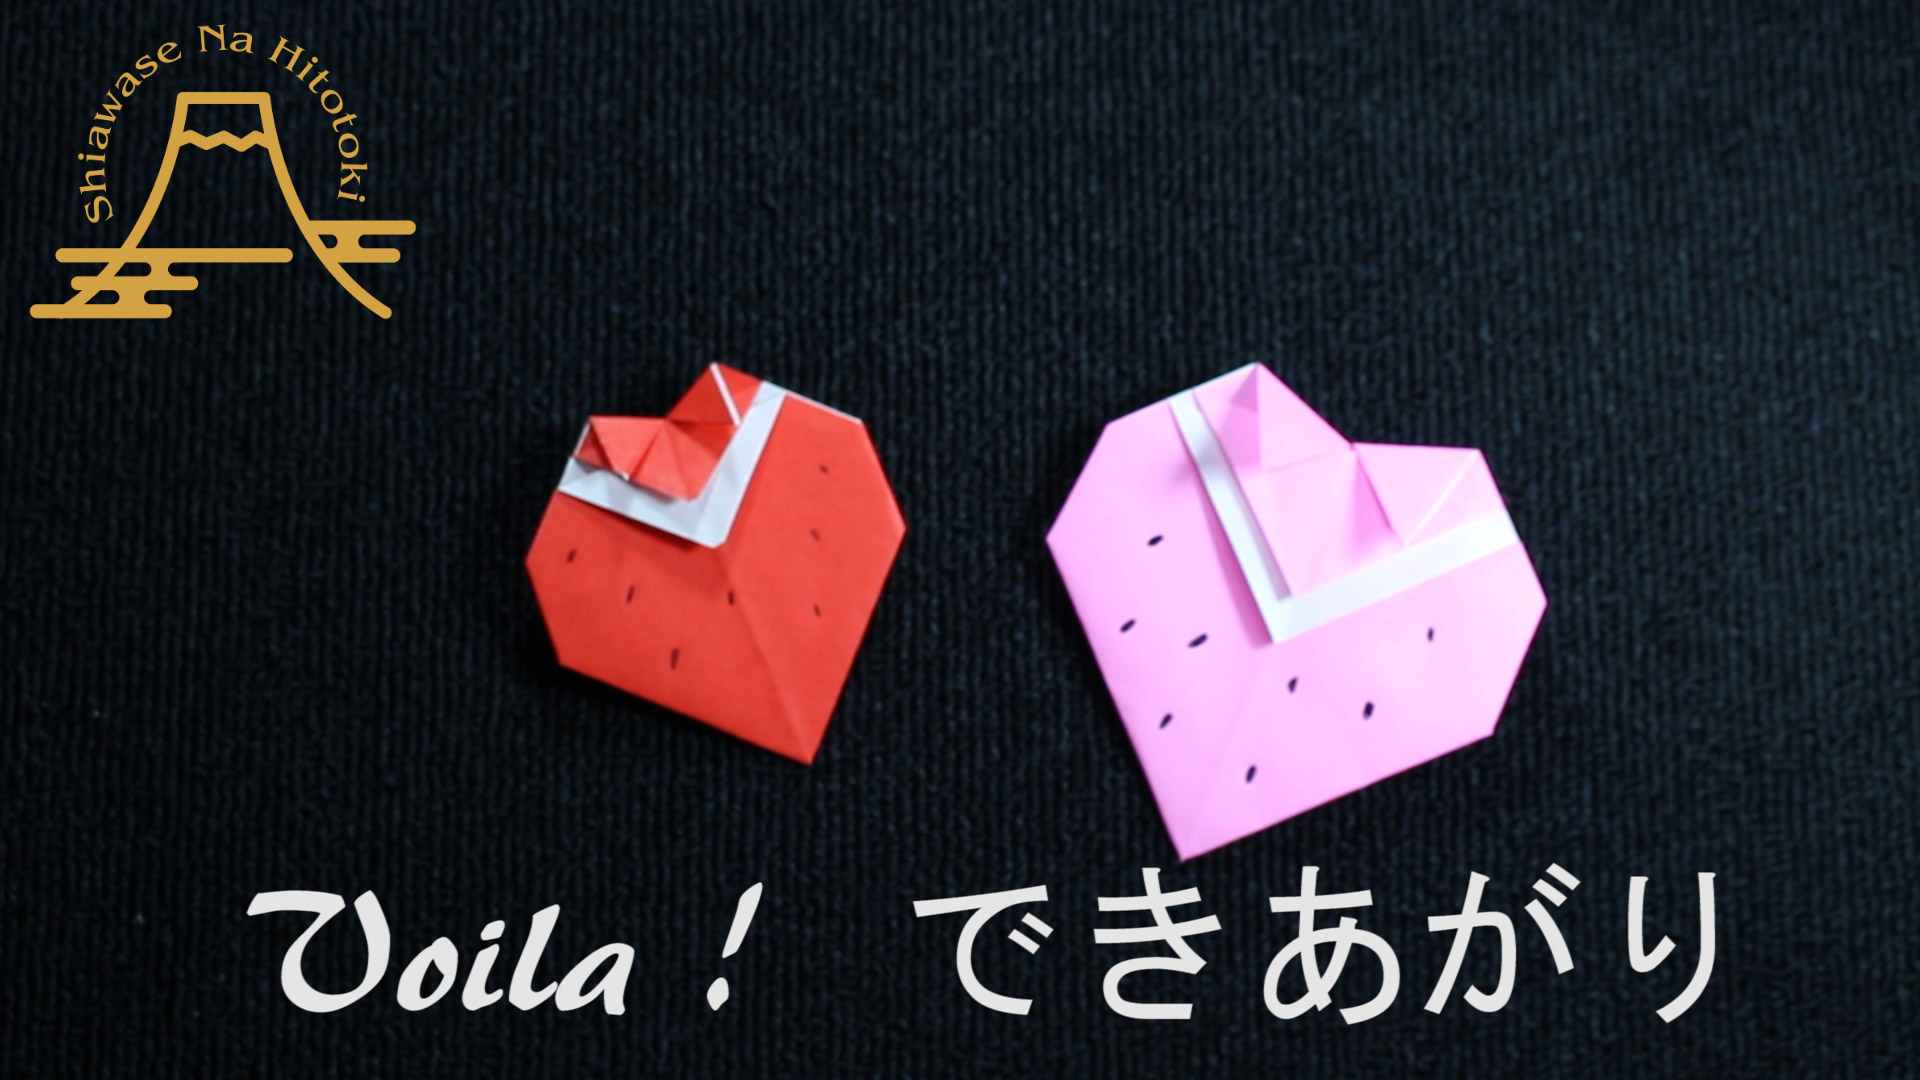 簡単 折り紙 お箸置きの折り方 Ver3 食卓をおしゃれに彩りましょう 折り紙の折り方 幸せなひと時